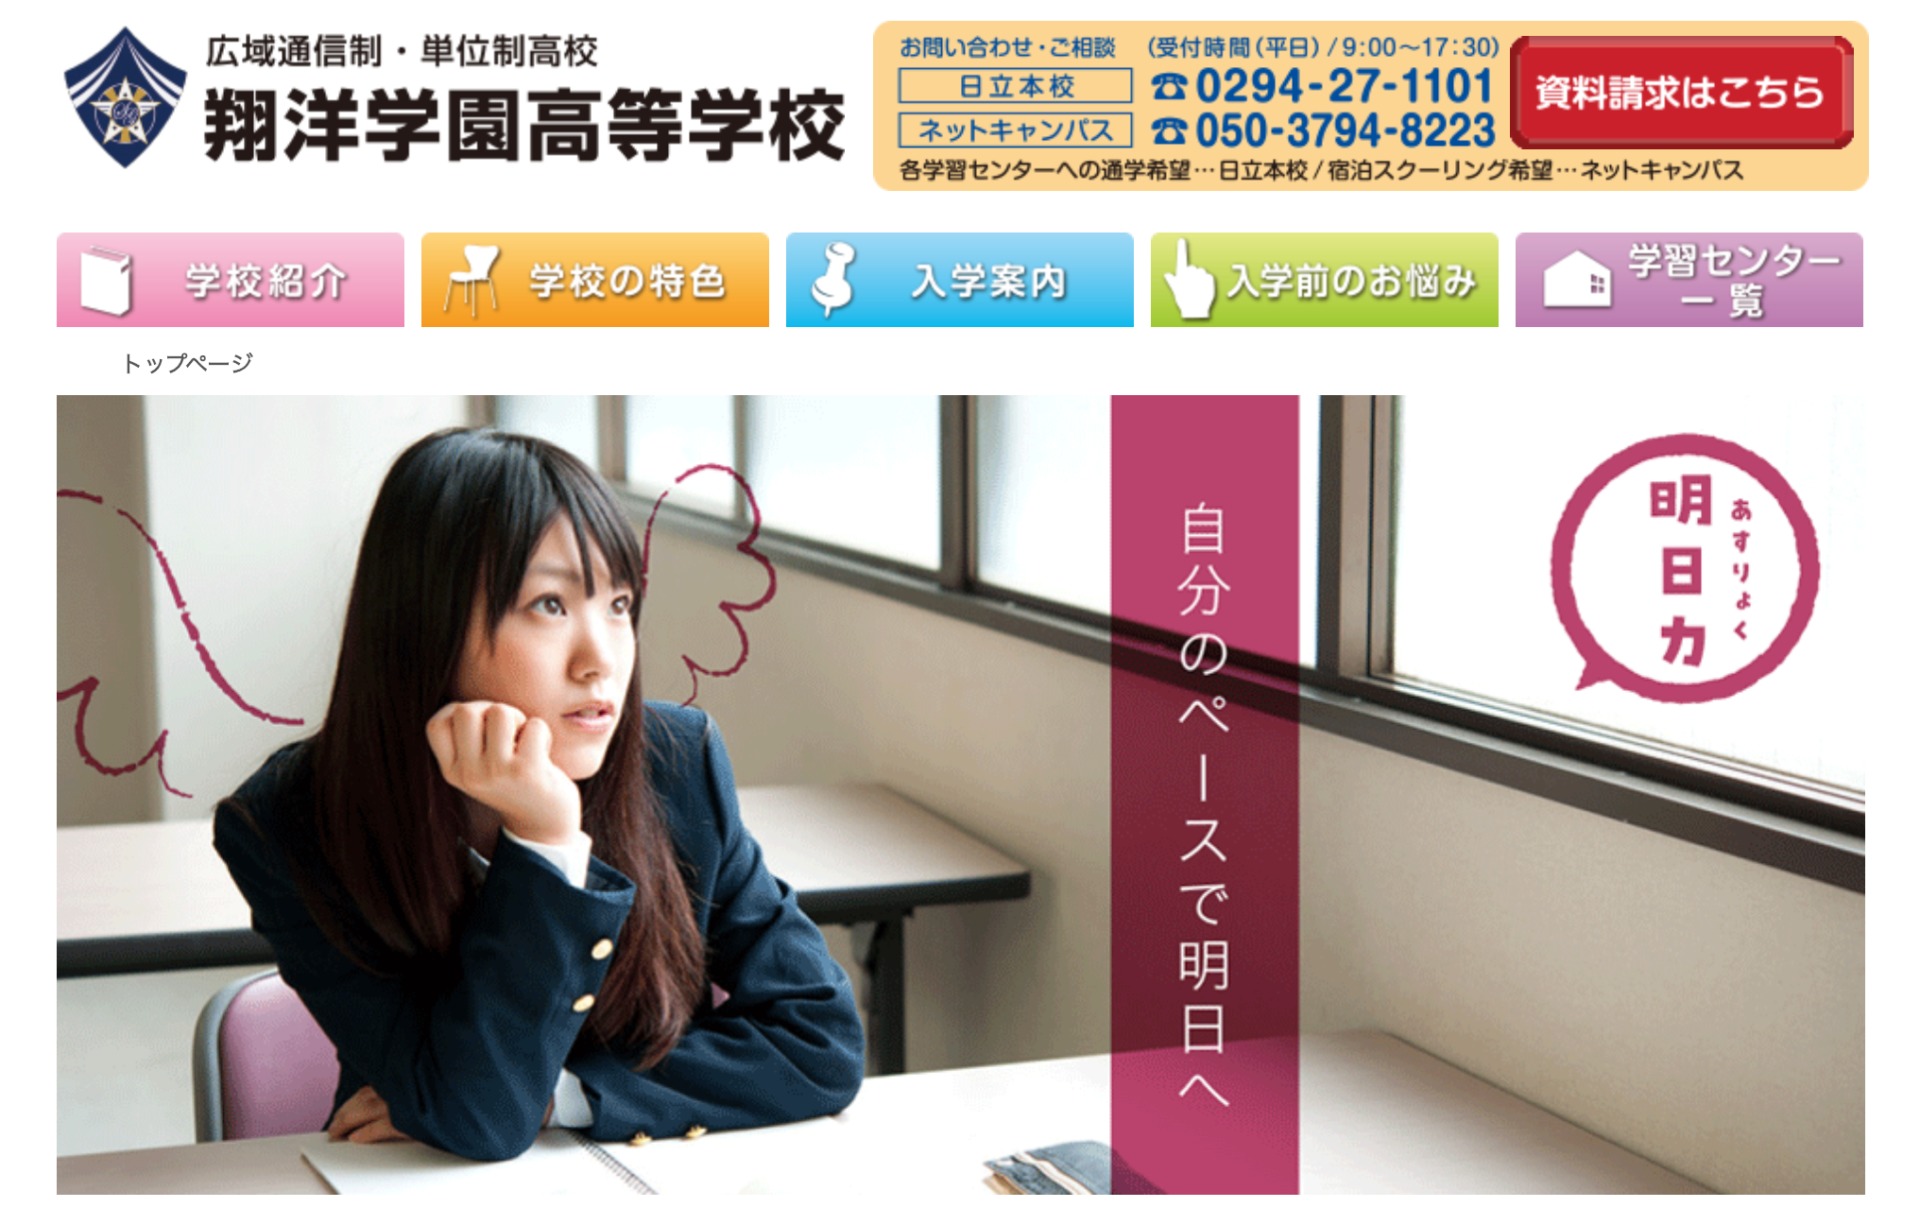 東京都内 学費の安いおすすめ通信制高校をまとめました 公立 私立 通信制高校選びの教科書